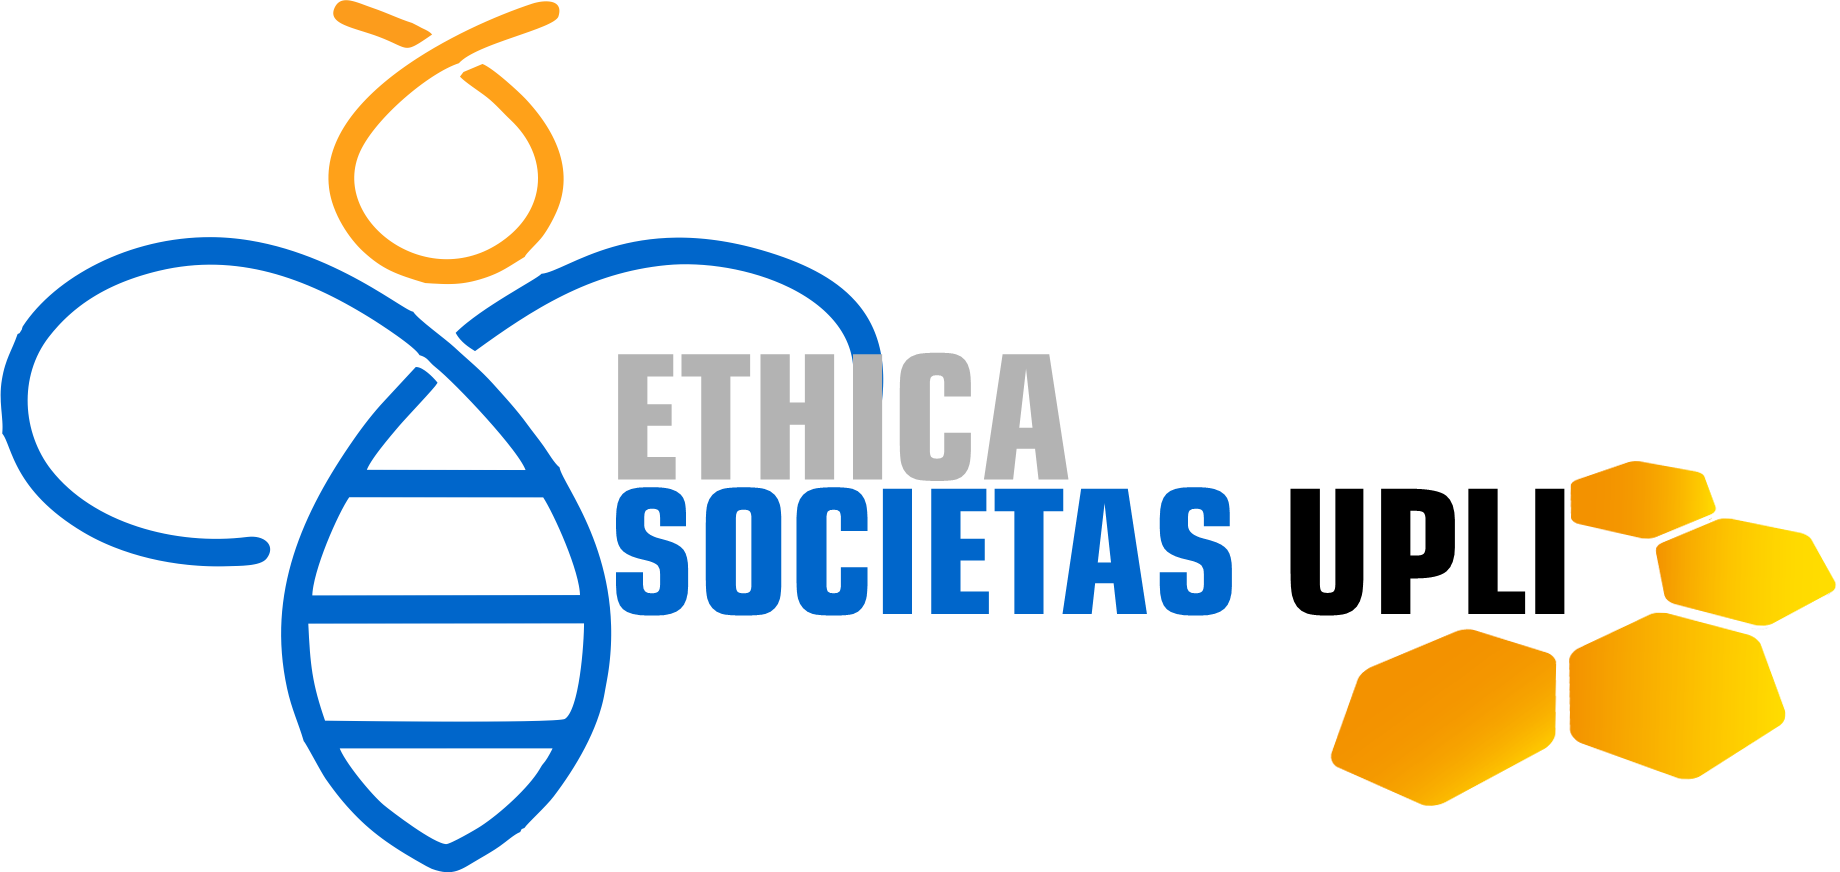 Ethica Societas Upli